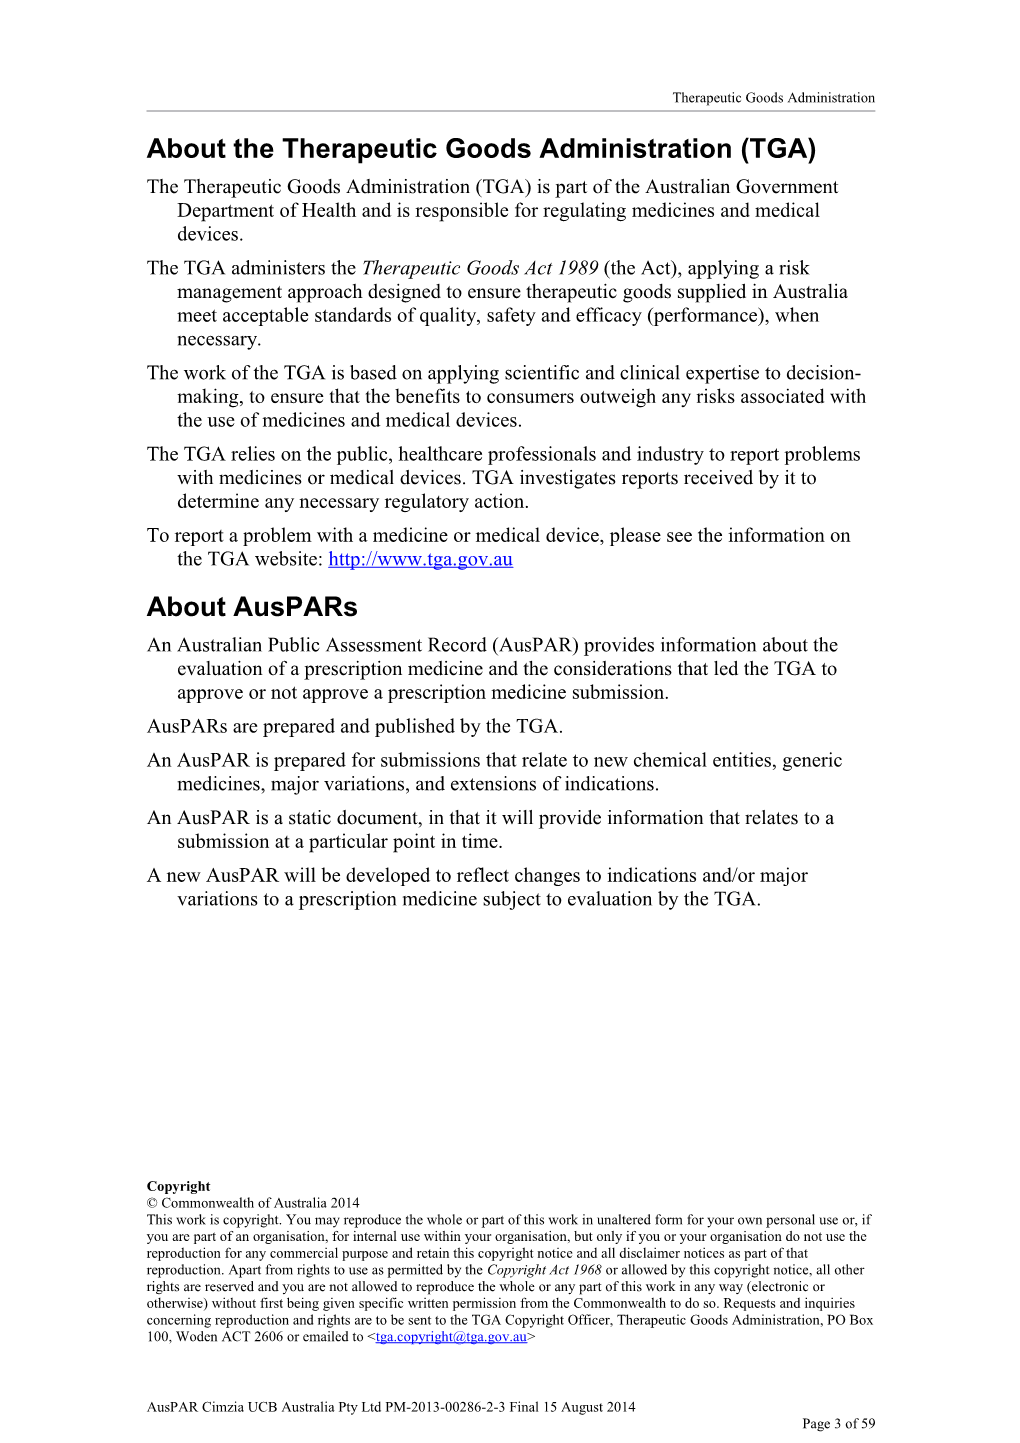 Australian Public Assessment Report for Certolizumab